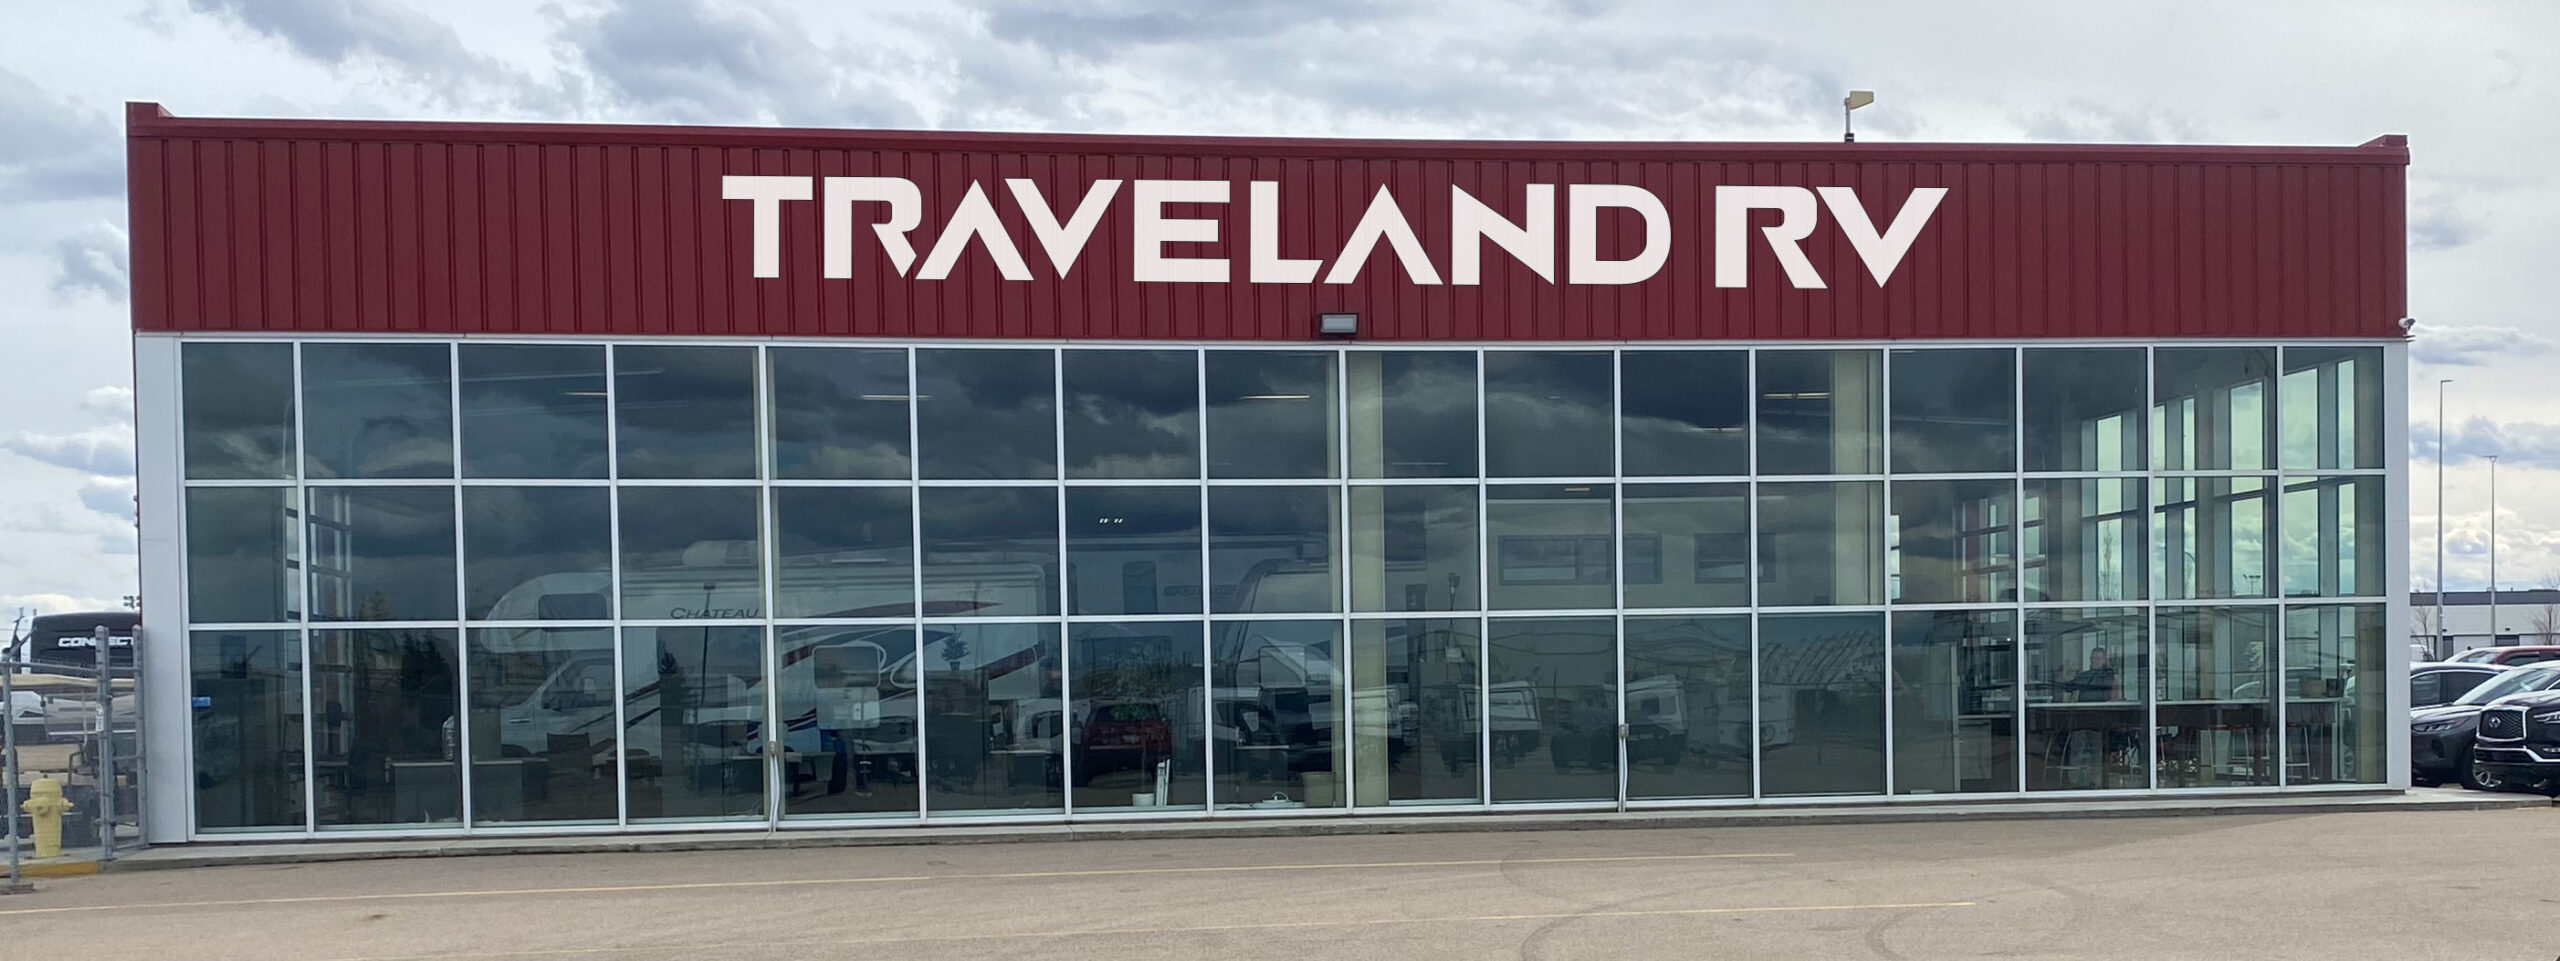 Traveland RV located in Edmonton, AB